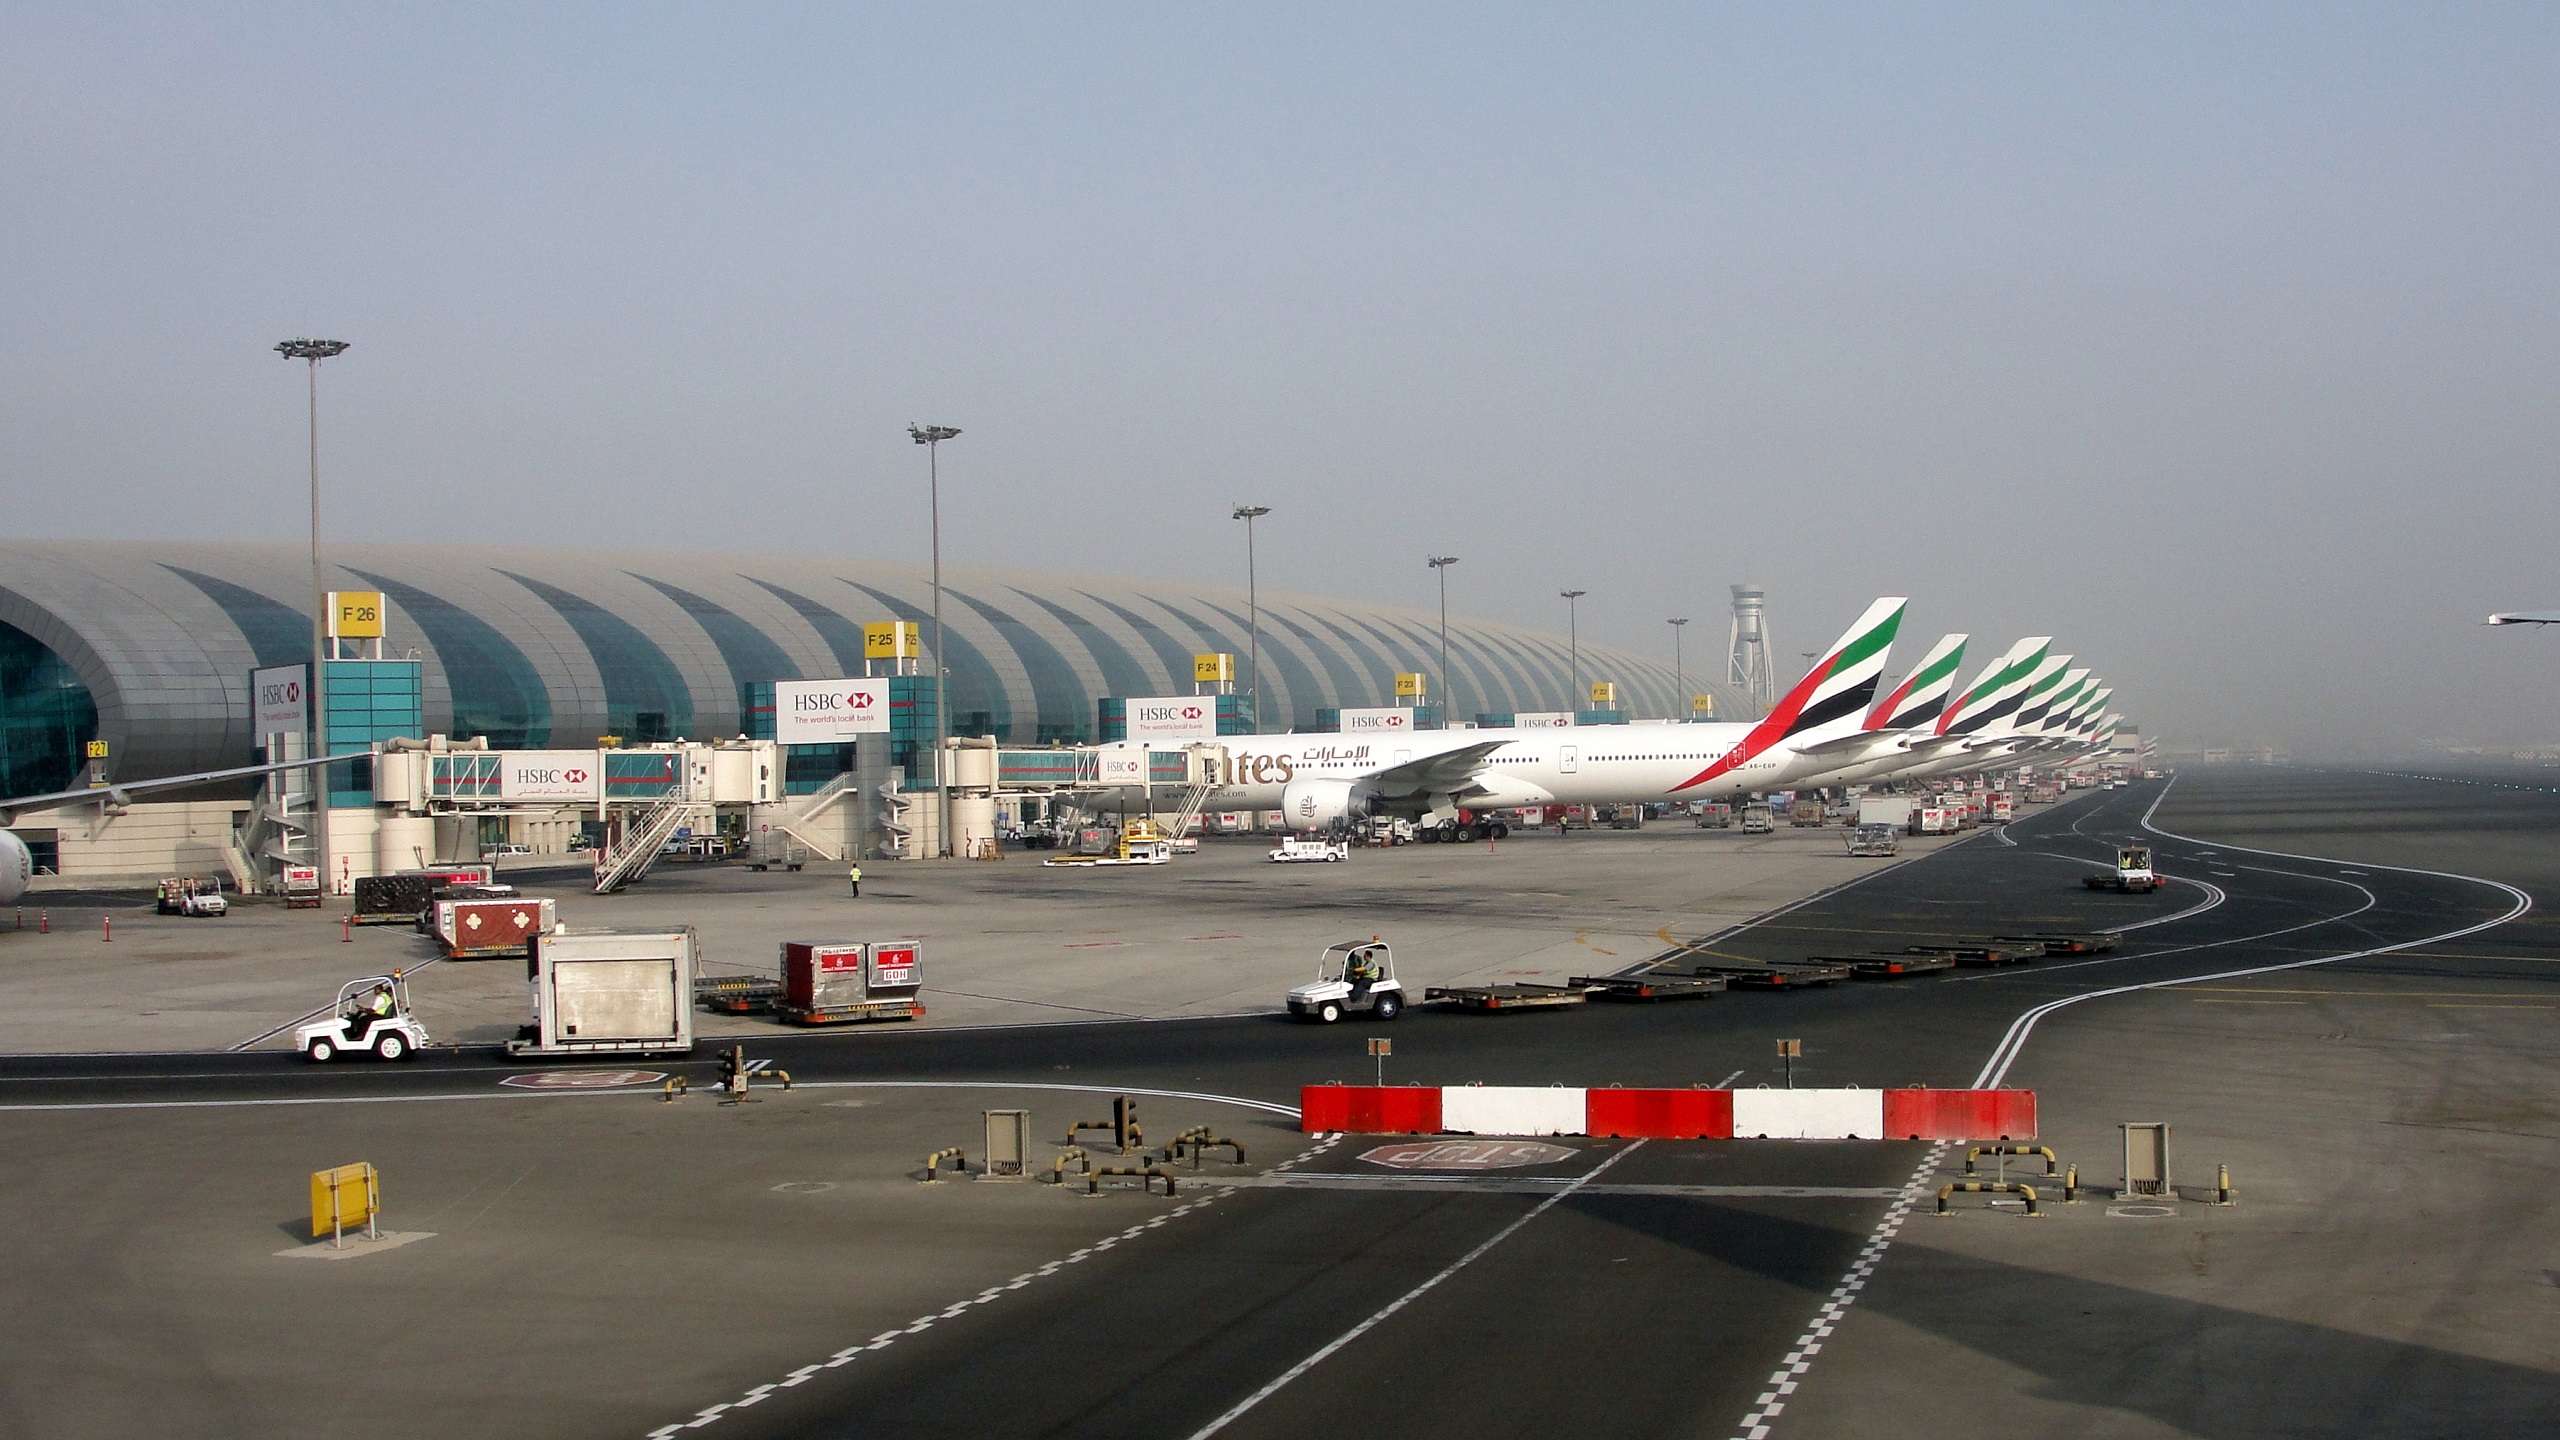 dxb airport terminal emirates plane